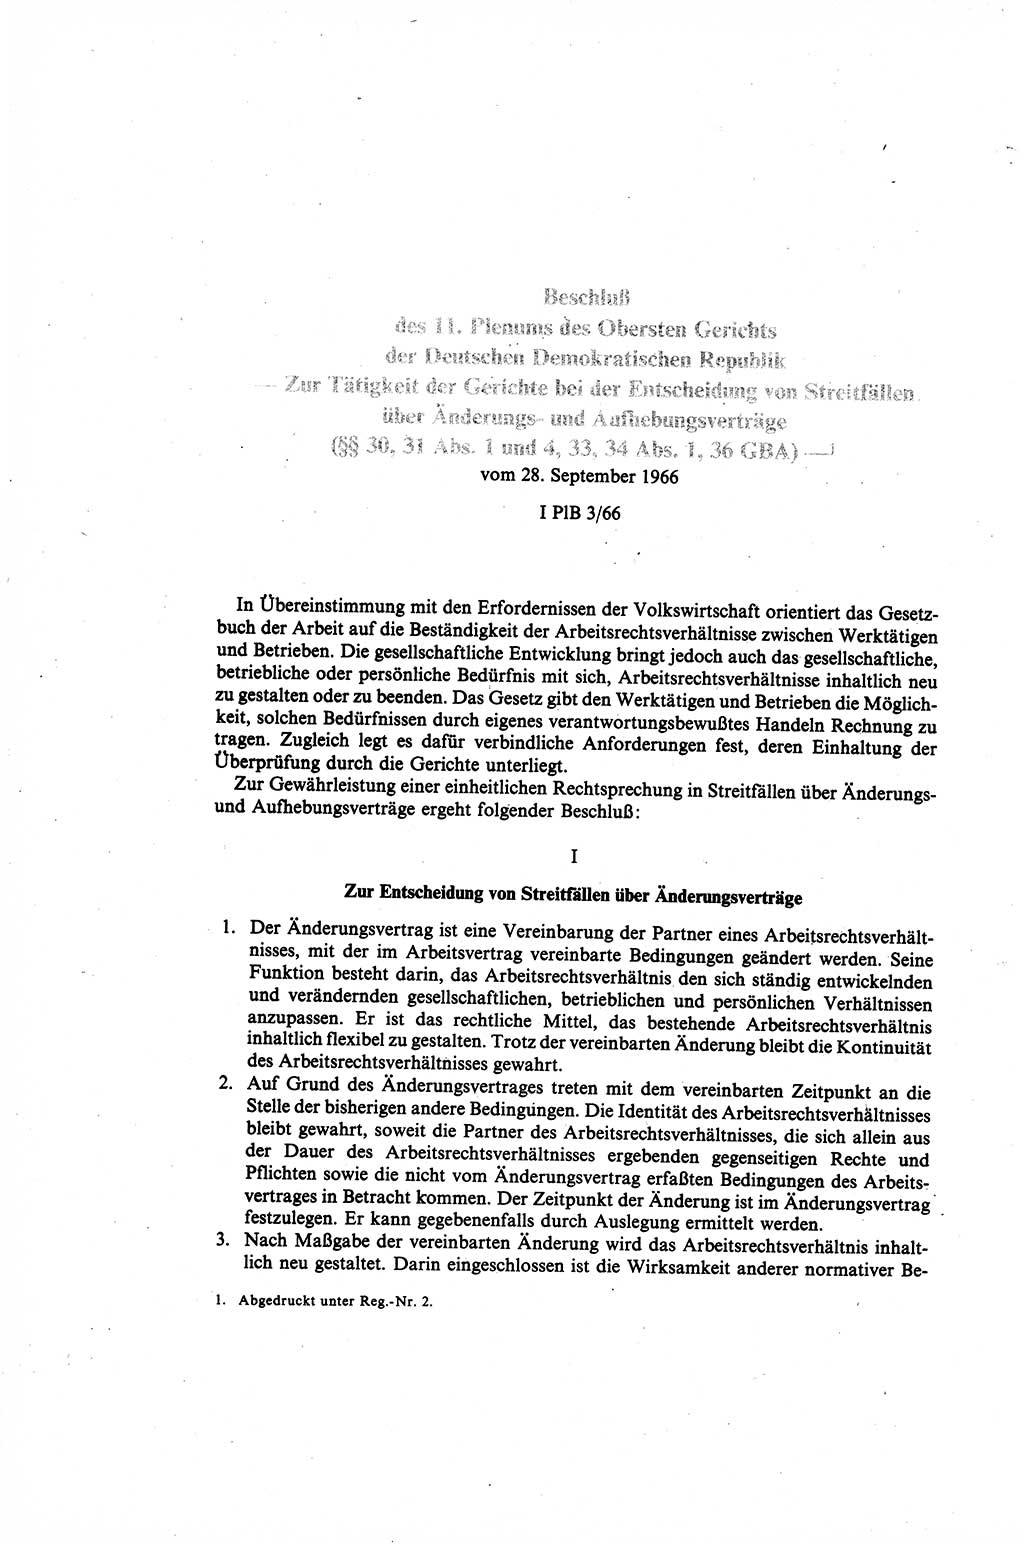 Gesetzbuch der Arbeit (GBA) und andere ausgewählte rechtliche Bestimmungen [Deutsche Demokratische Republik (DDR)] 1968, Seite 182 (GBA DDR 1968, S. 182)